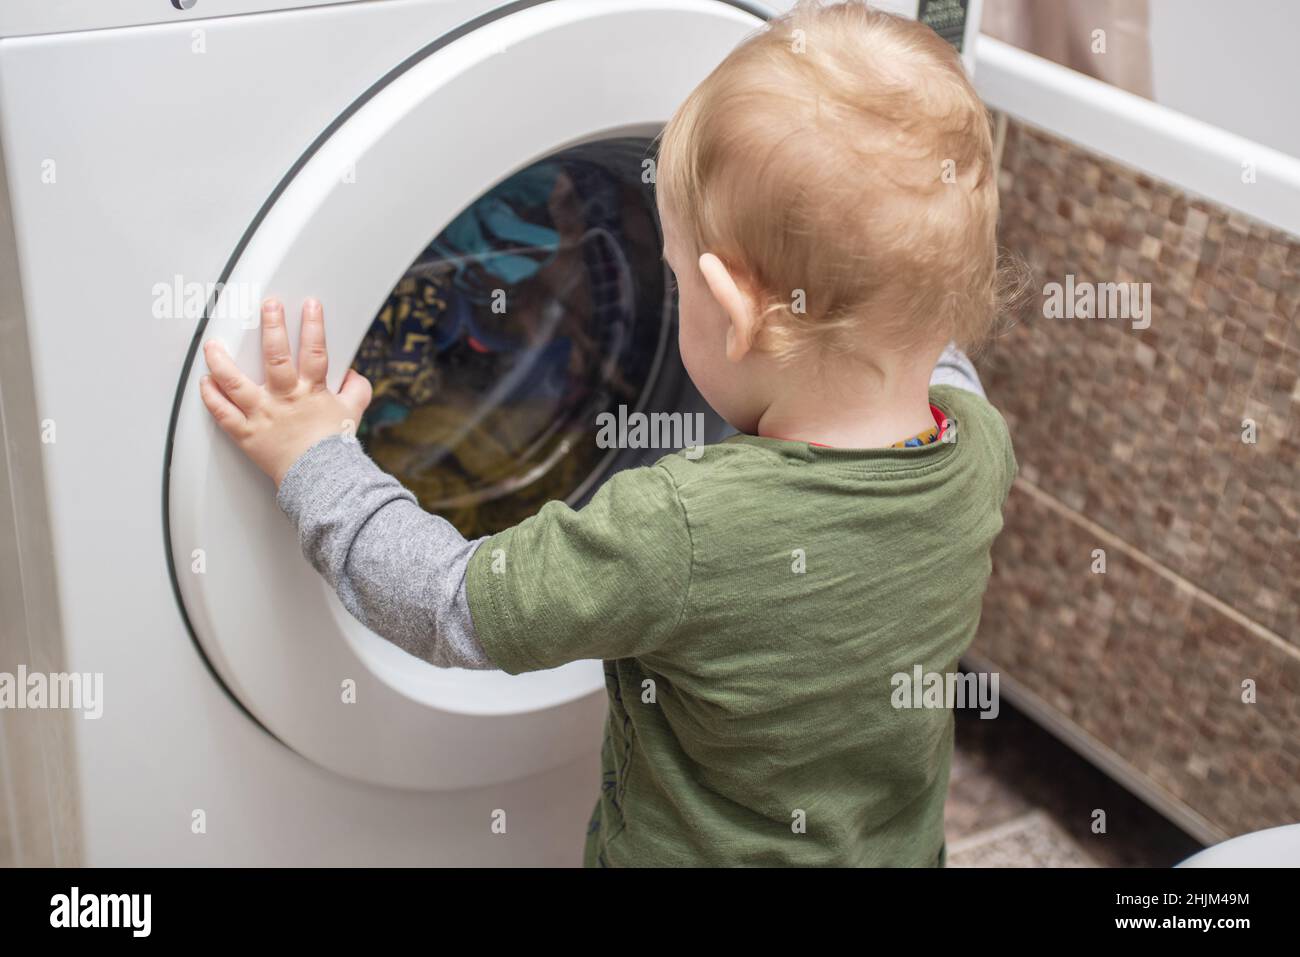 Enfant garçon regarde dans la machine à laver.Bébé garçon intéressé par les  cycles de la machine à laver faire du linge Photo Stock - Alamy